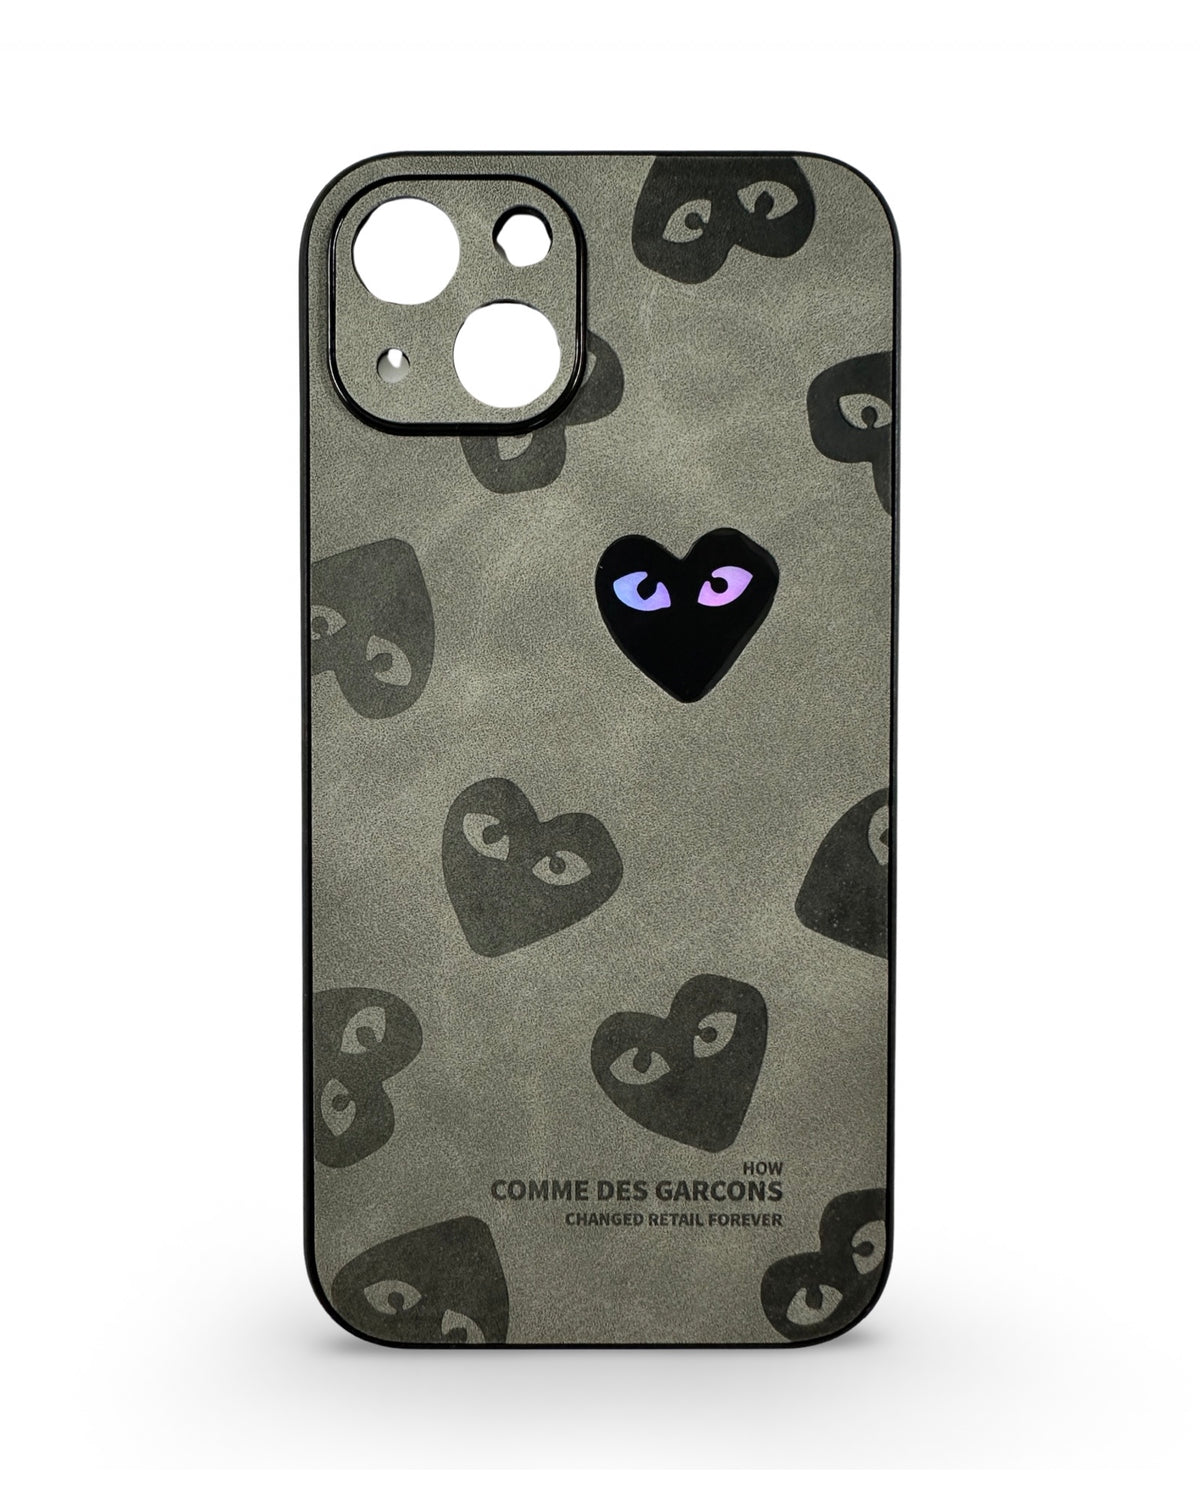 CaseNerd "Heart Grey" iPhone Case